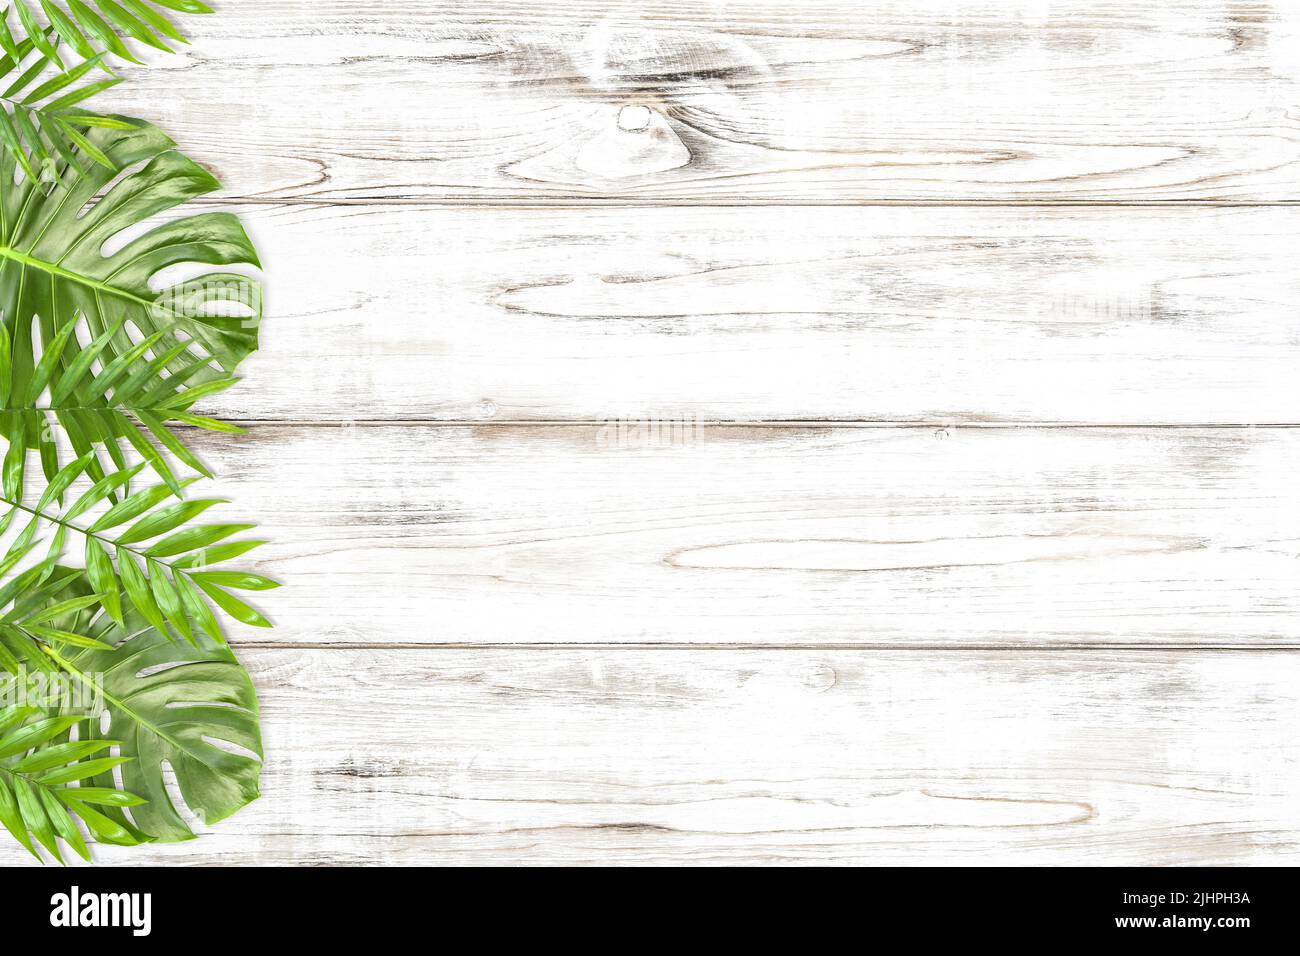 Bordure florale avec monstère verte et feuilles de palmier sur fond en bois clair Banque D'Images